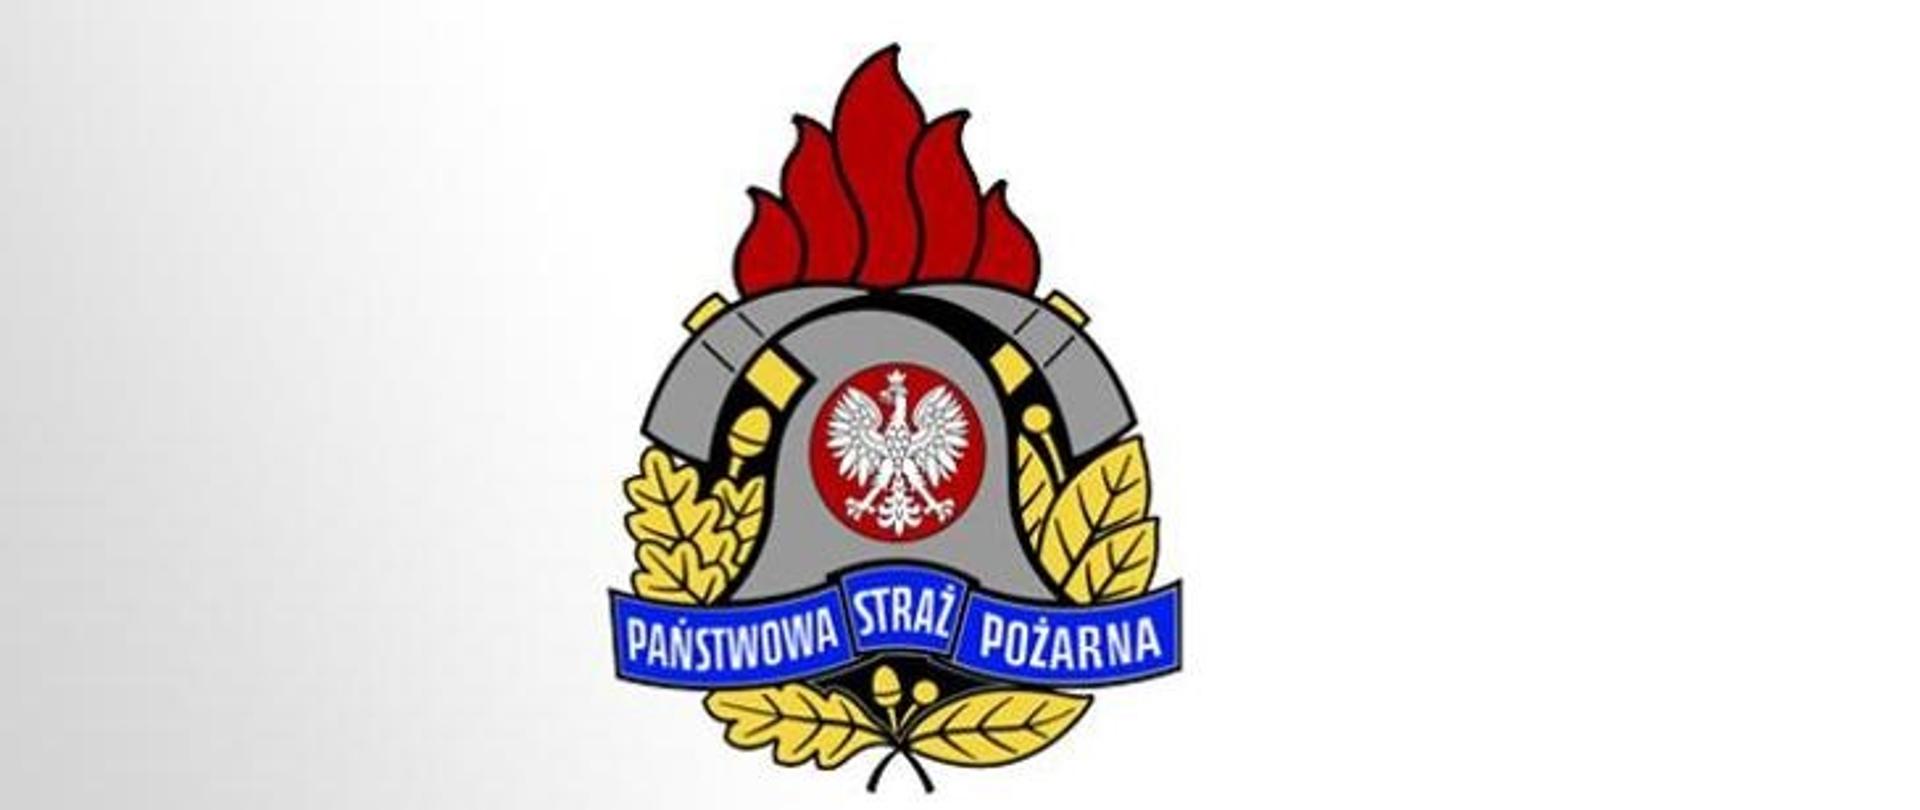 Zdjęcie przedstawia logo PSP, hełm strażacki z białym orłem na czerwonym tle usadowiony na żółtych liściach dębu, pod spodem na niebieskim tle napis Państwowa Straż Pożarna. Za hełmem dwa skrzyżowane toporki, nad którymi znajduje się czerwony płomień.